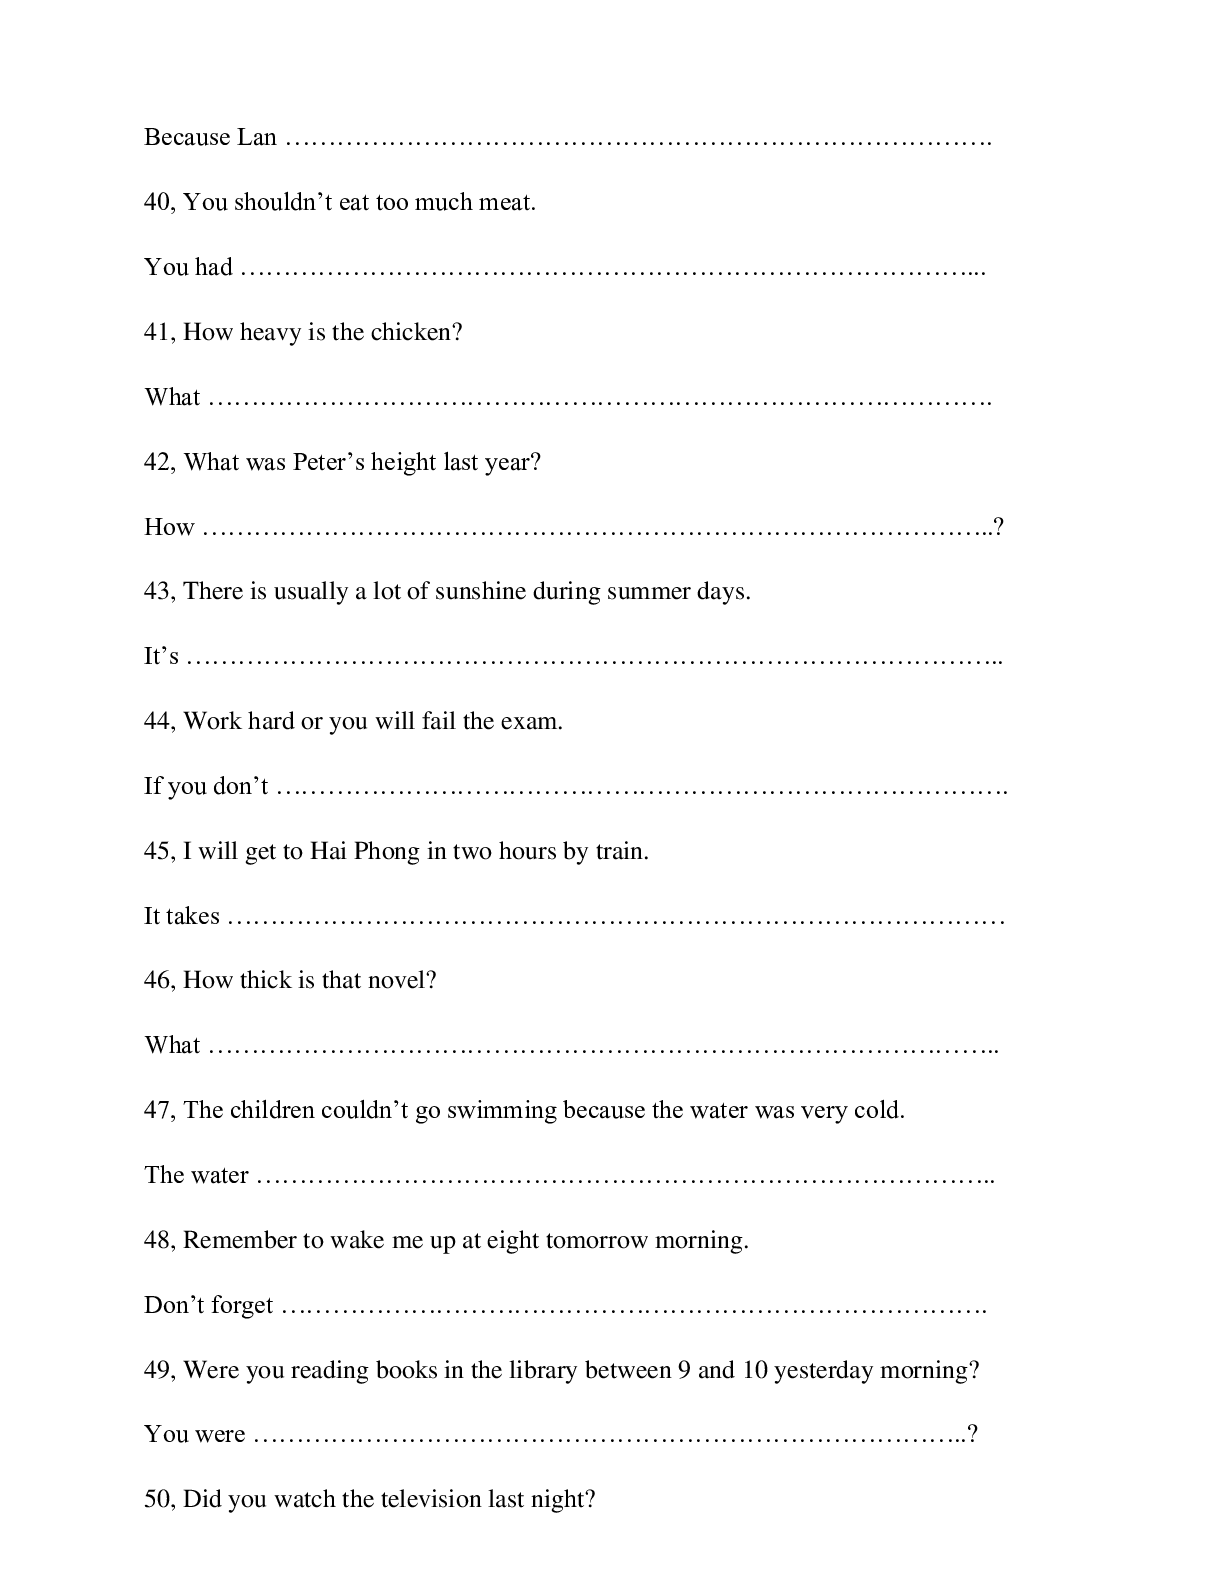 Chuyên đề Viết lại câu môn Tiếng Anh lớp 7 (trang 6)